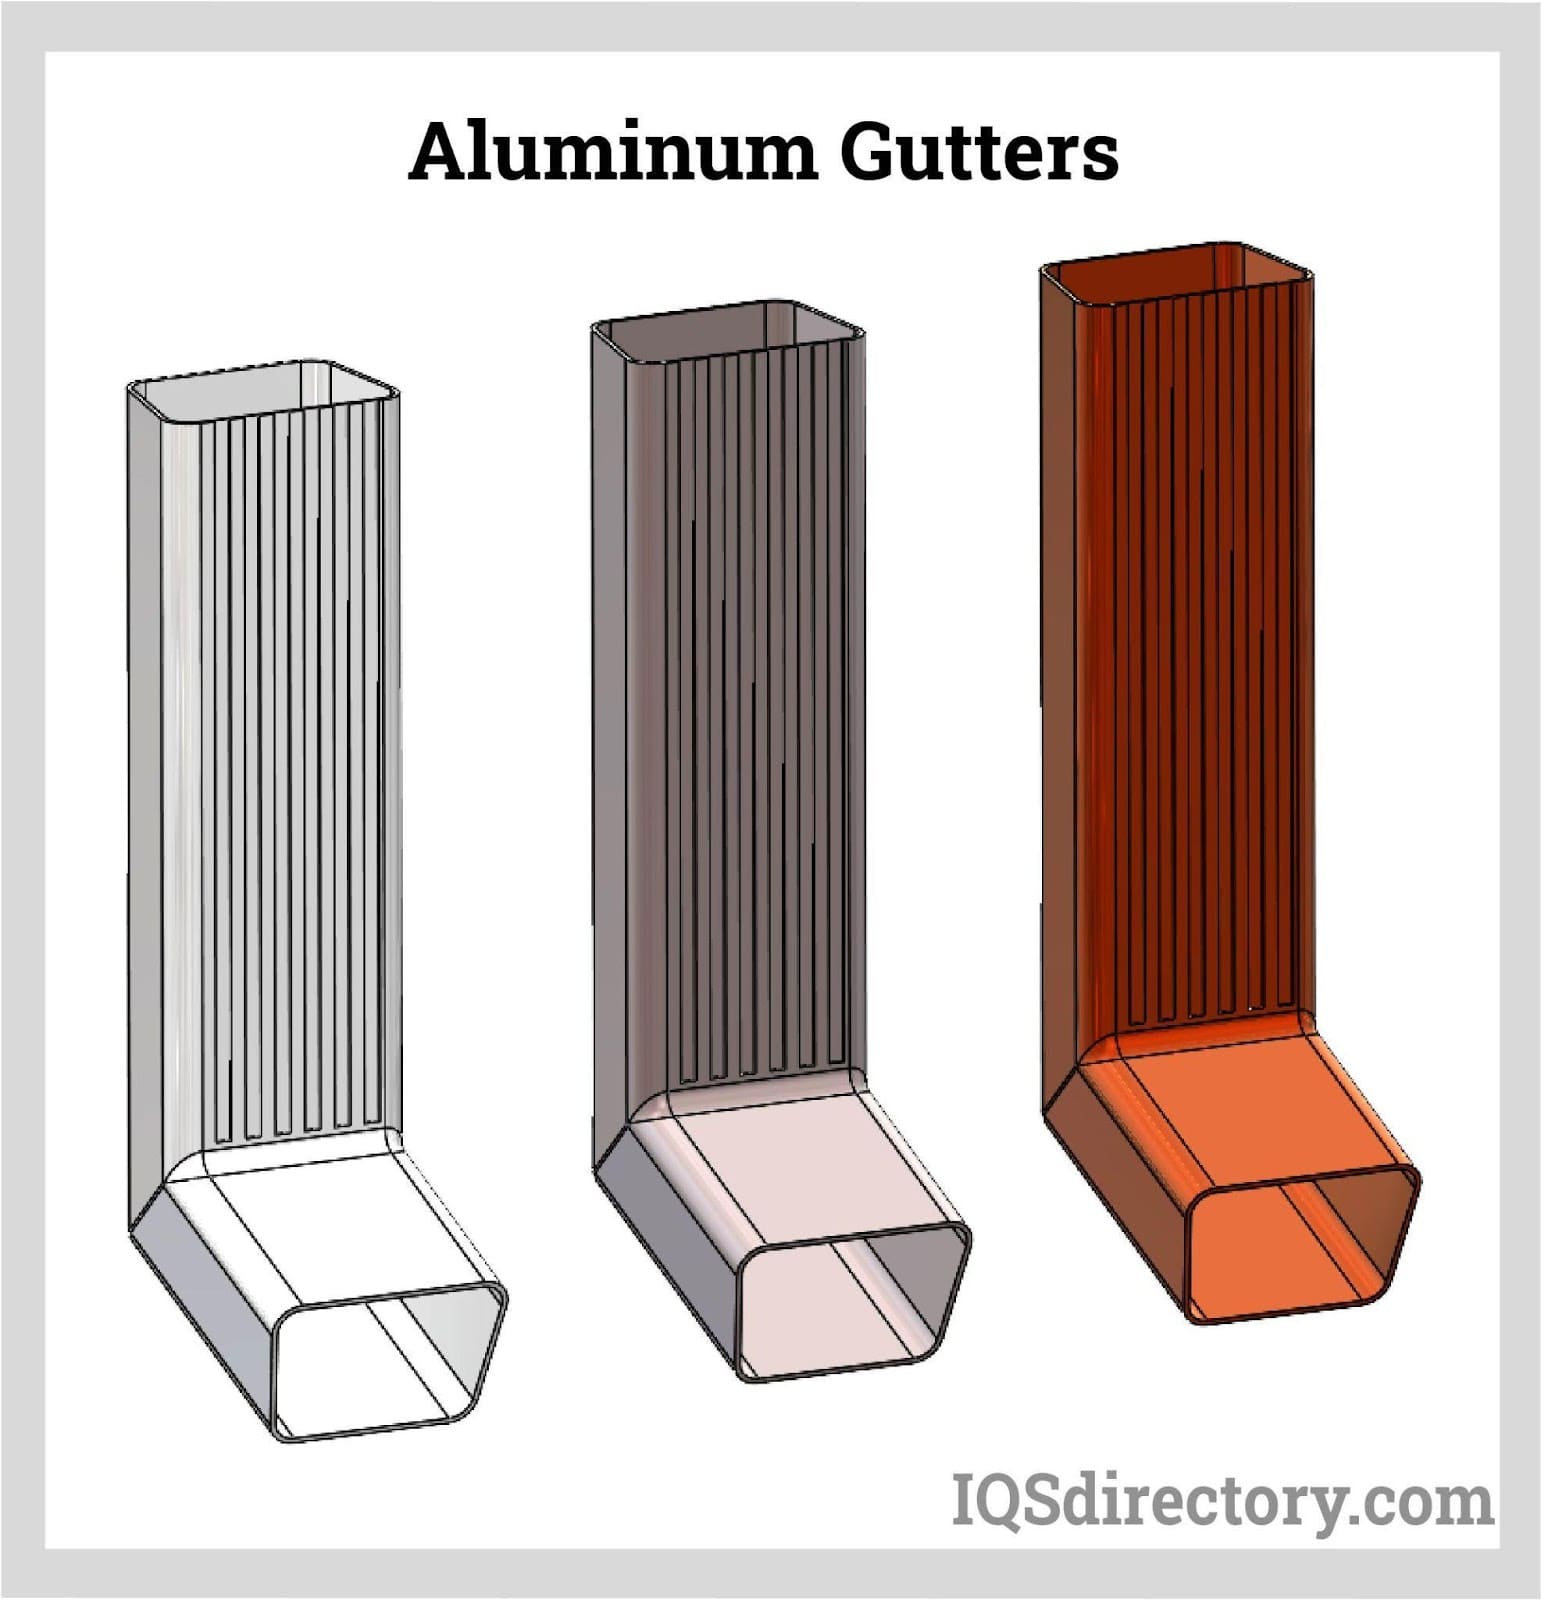 Aluminum Gutter